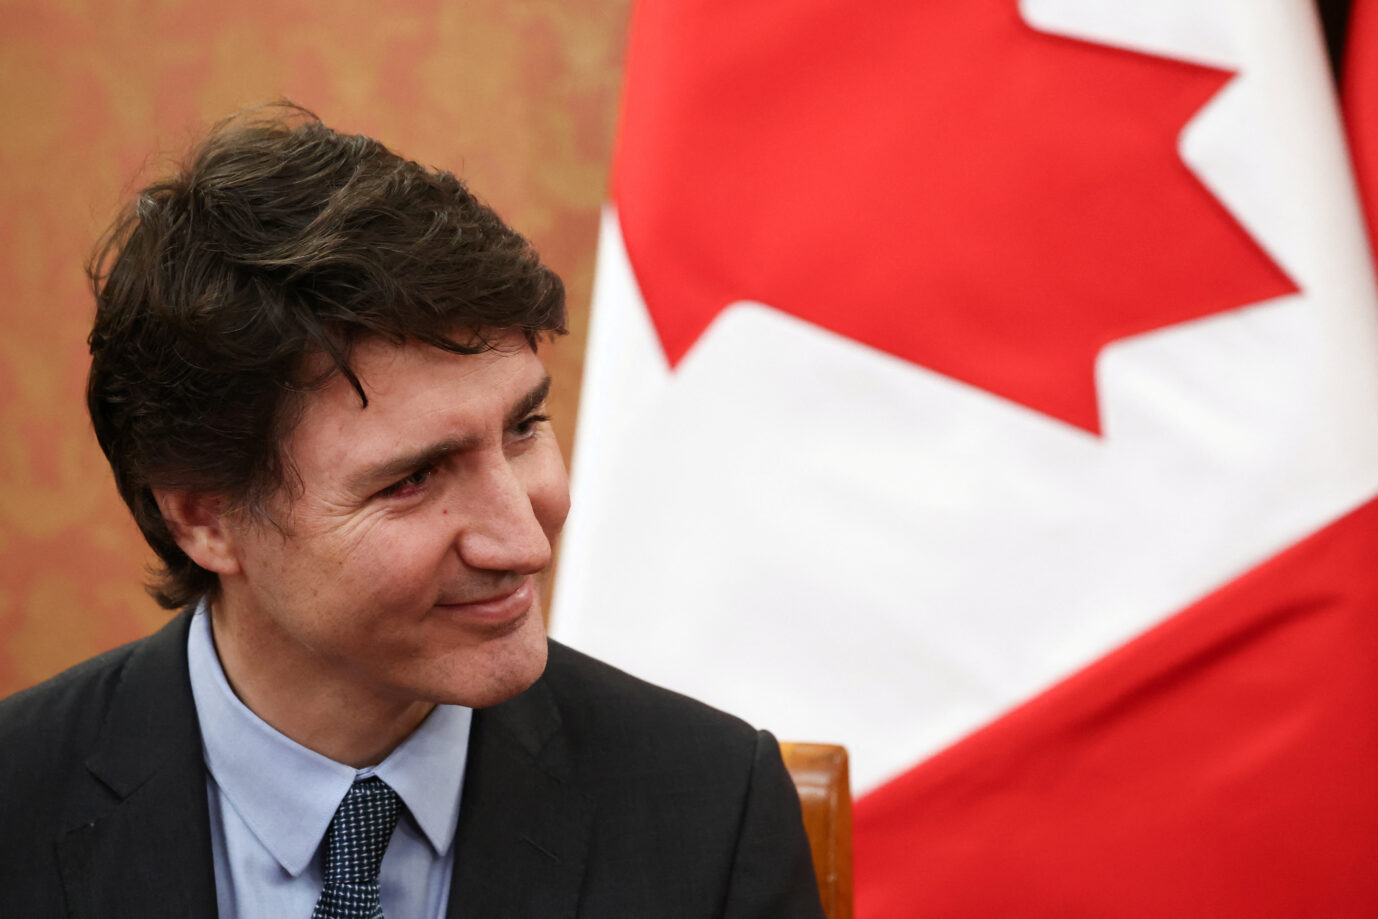 Will gegen Haßrede vorgehen: Der kanadischePremierminister Justin Trudeau